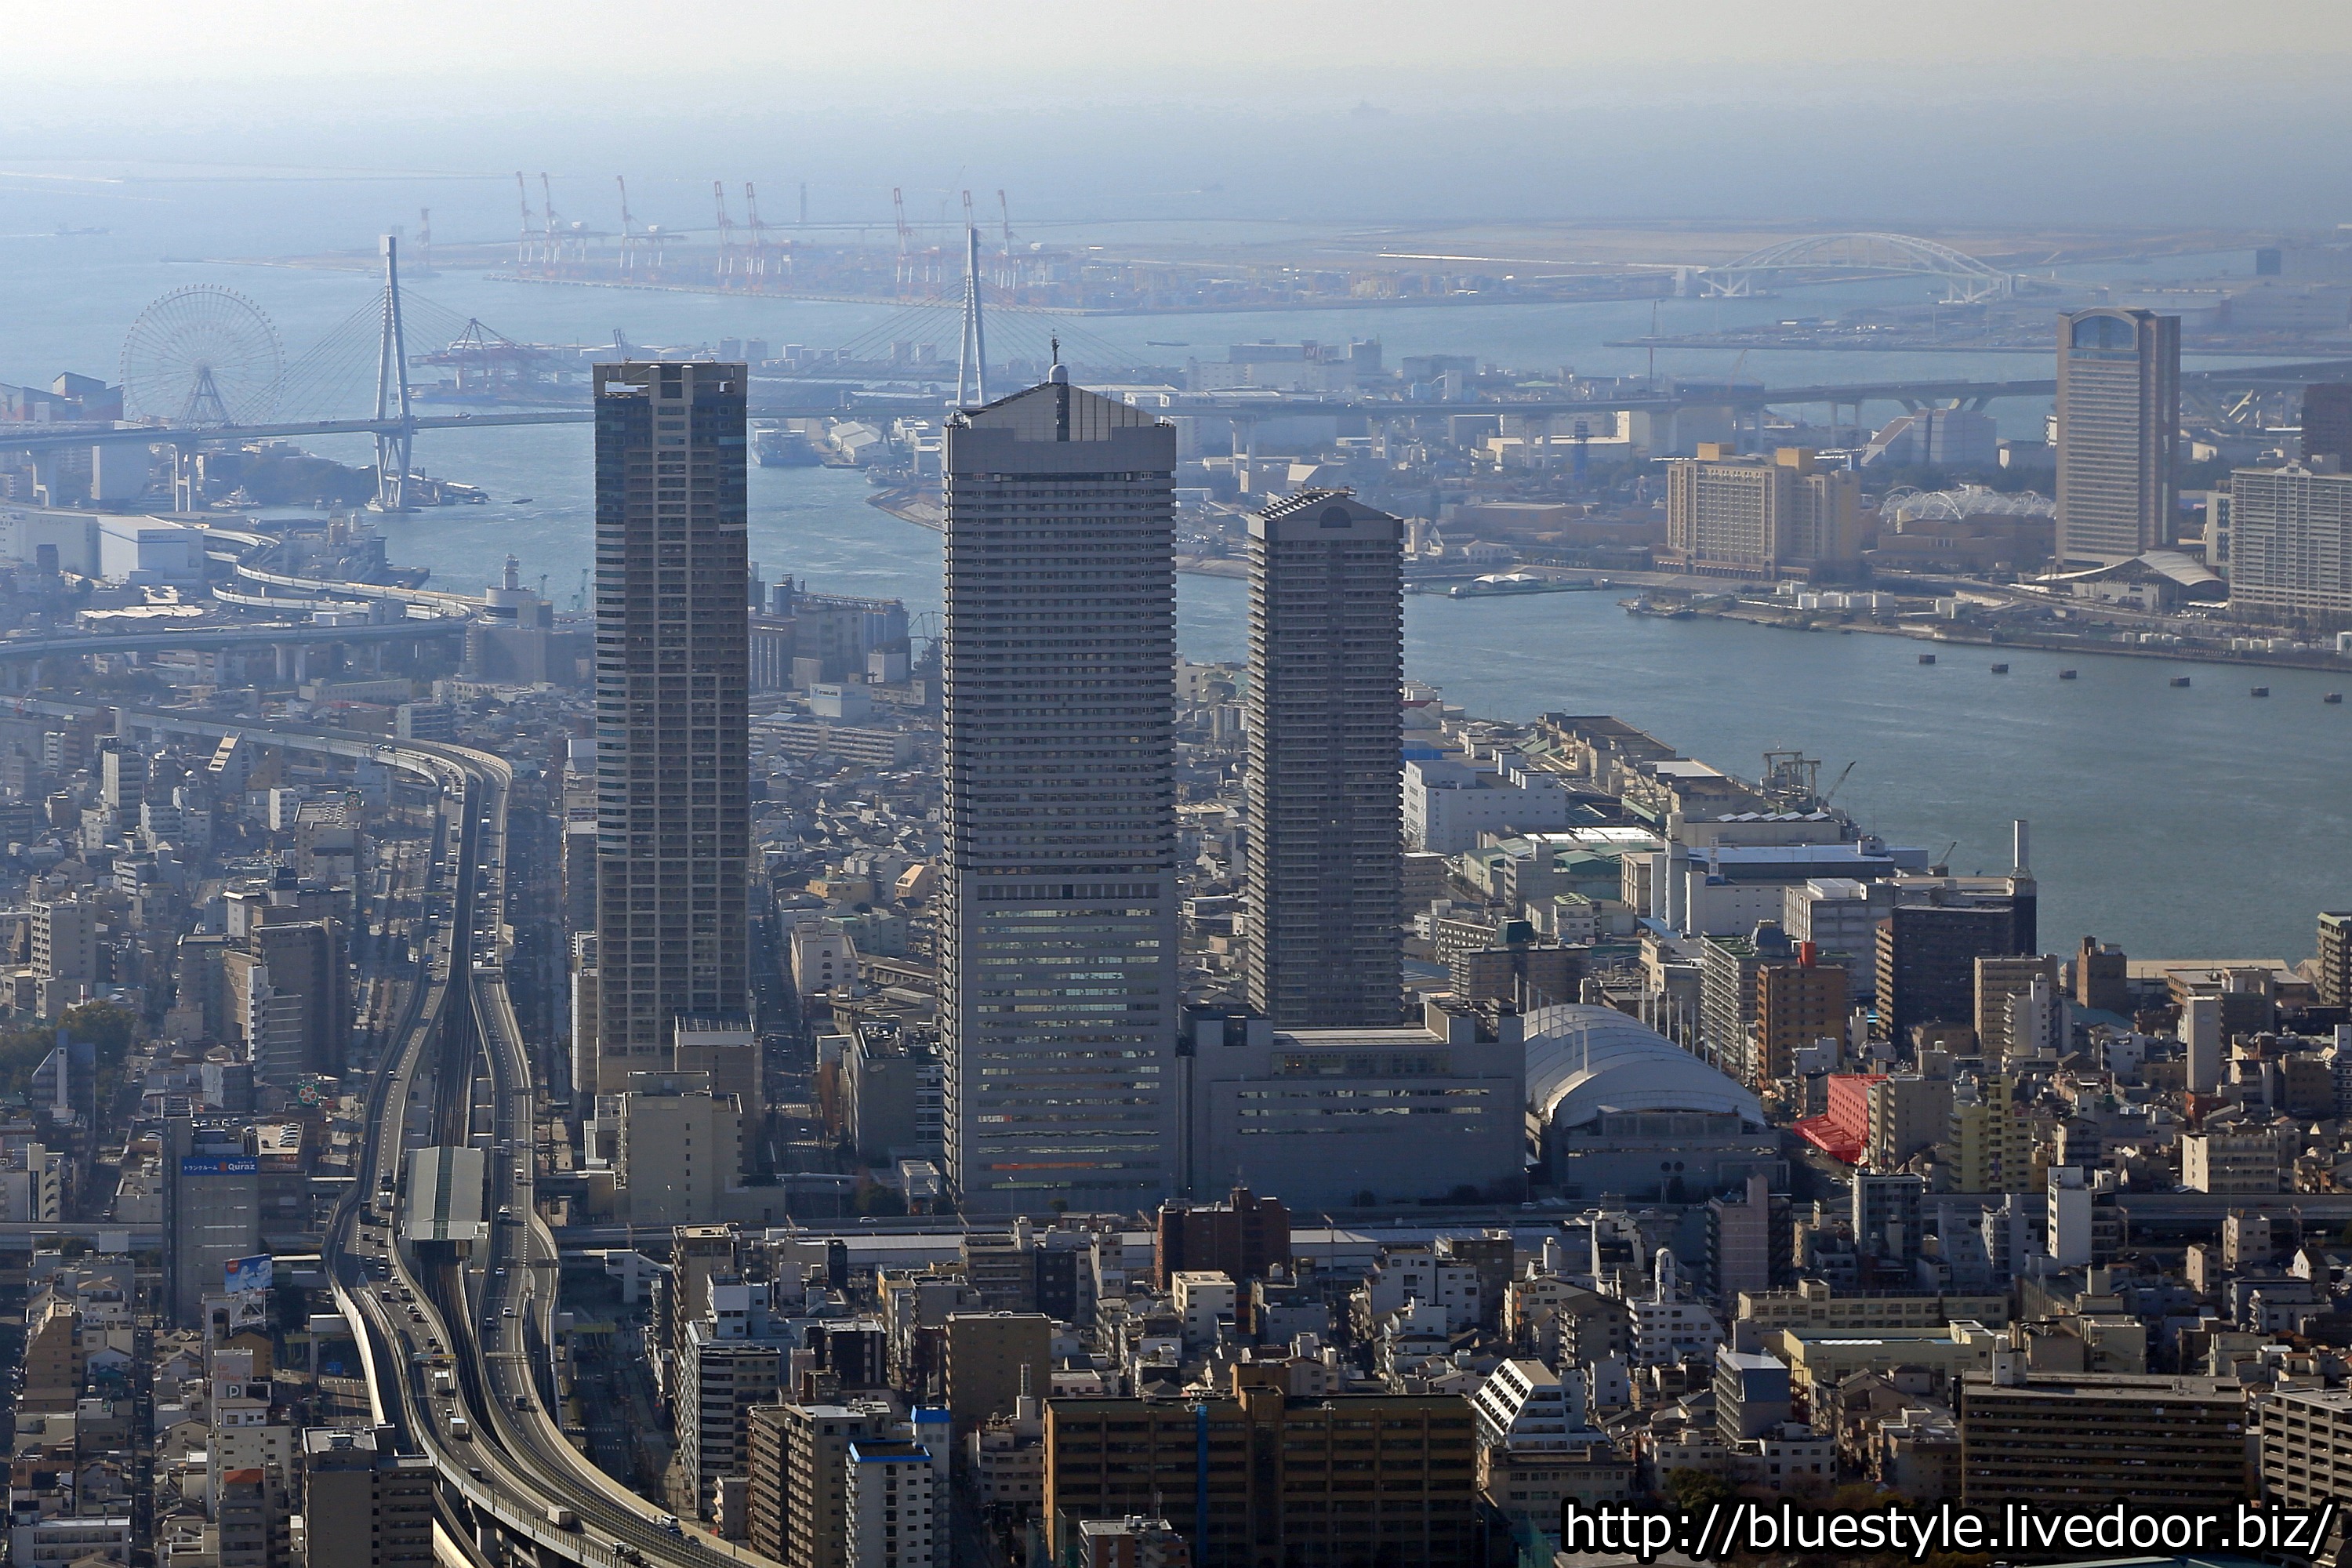 地上29階 仮称 港区弁天4丁目集合住宅の建設地の様子 大阪の弁天町に新規タワマンです 2020 02 24 超高層マンション 超高層ビル